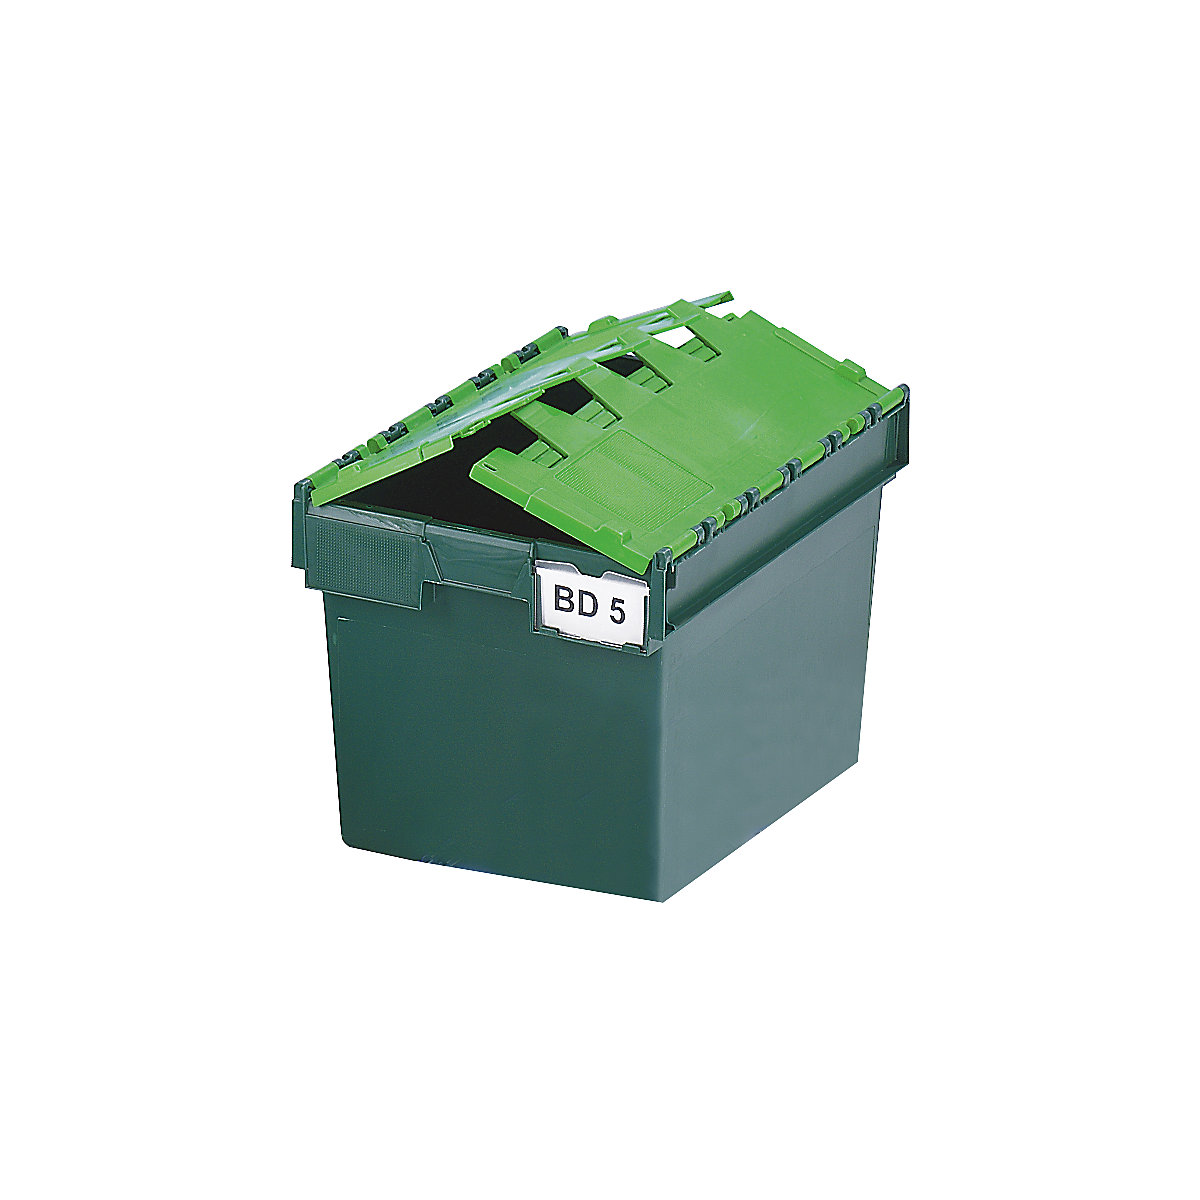 Mehrweg-Stapelbehälter KAIMAN, Inhalt 64 Liter, LxBxH 600 x 400 x 365 mm, grün